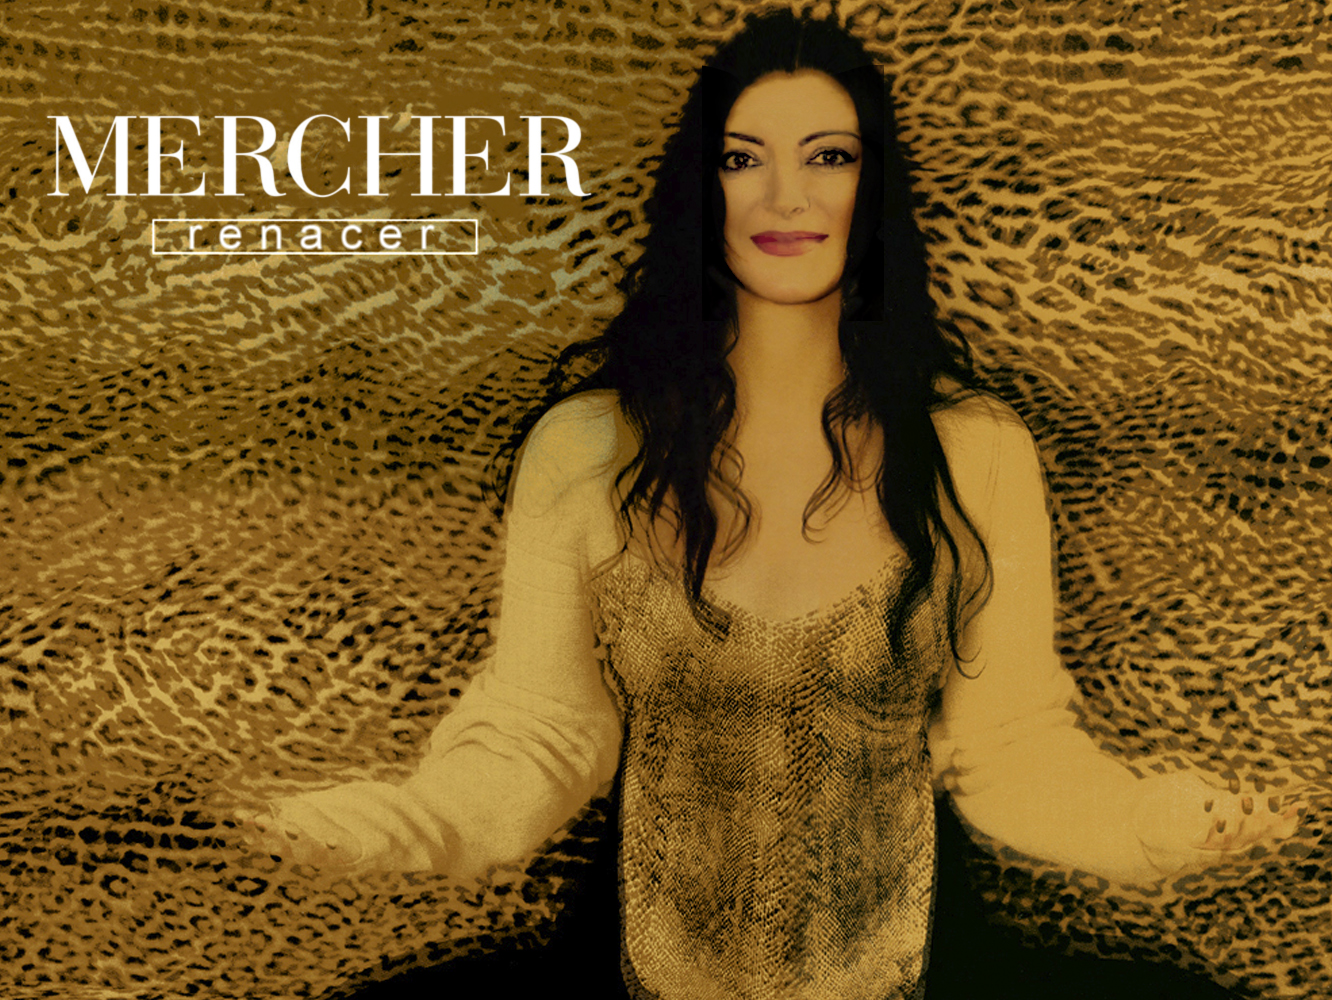  MerCher publica el lyric vídeo de su nuevo single, ‘Renacer’, grabado dentro de un acuario